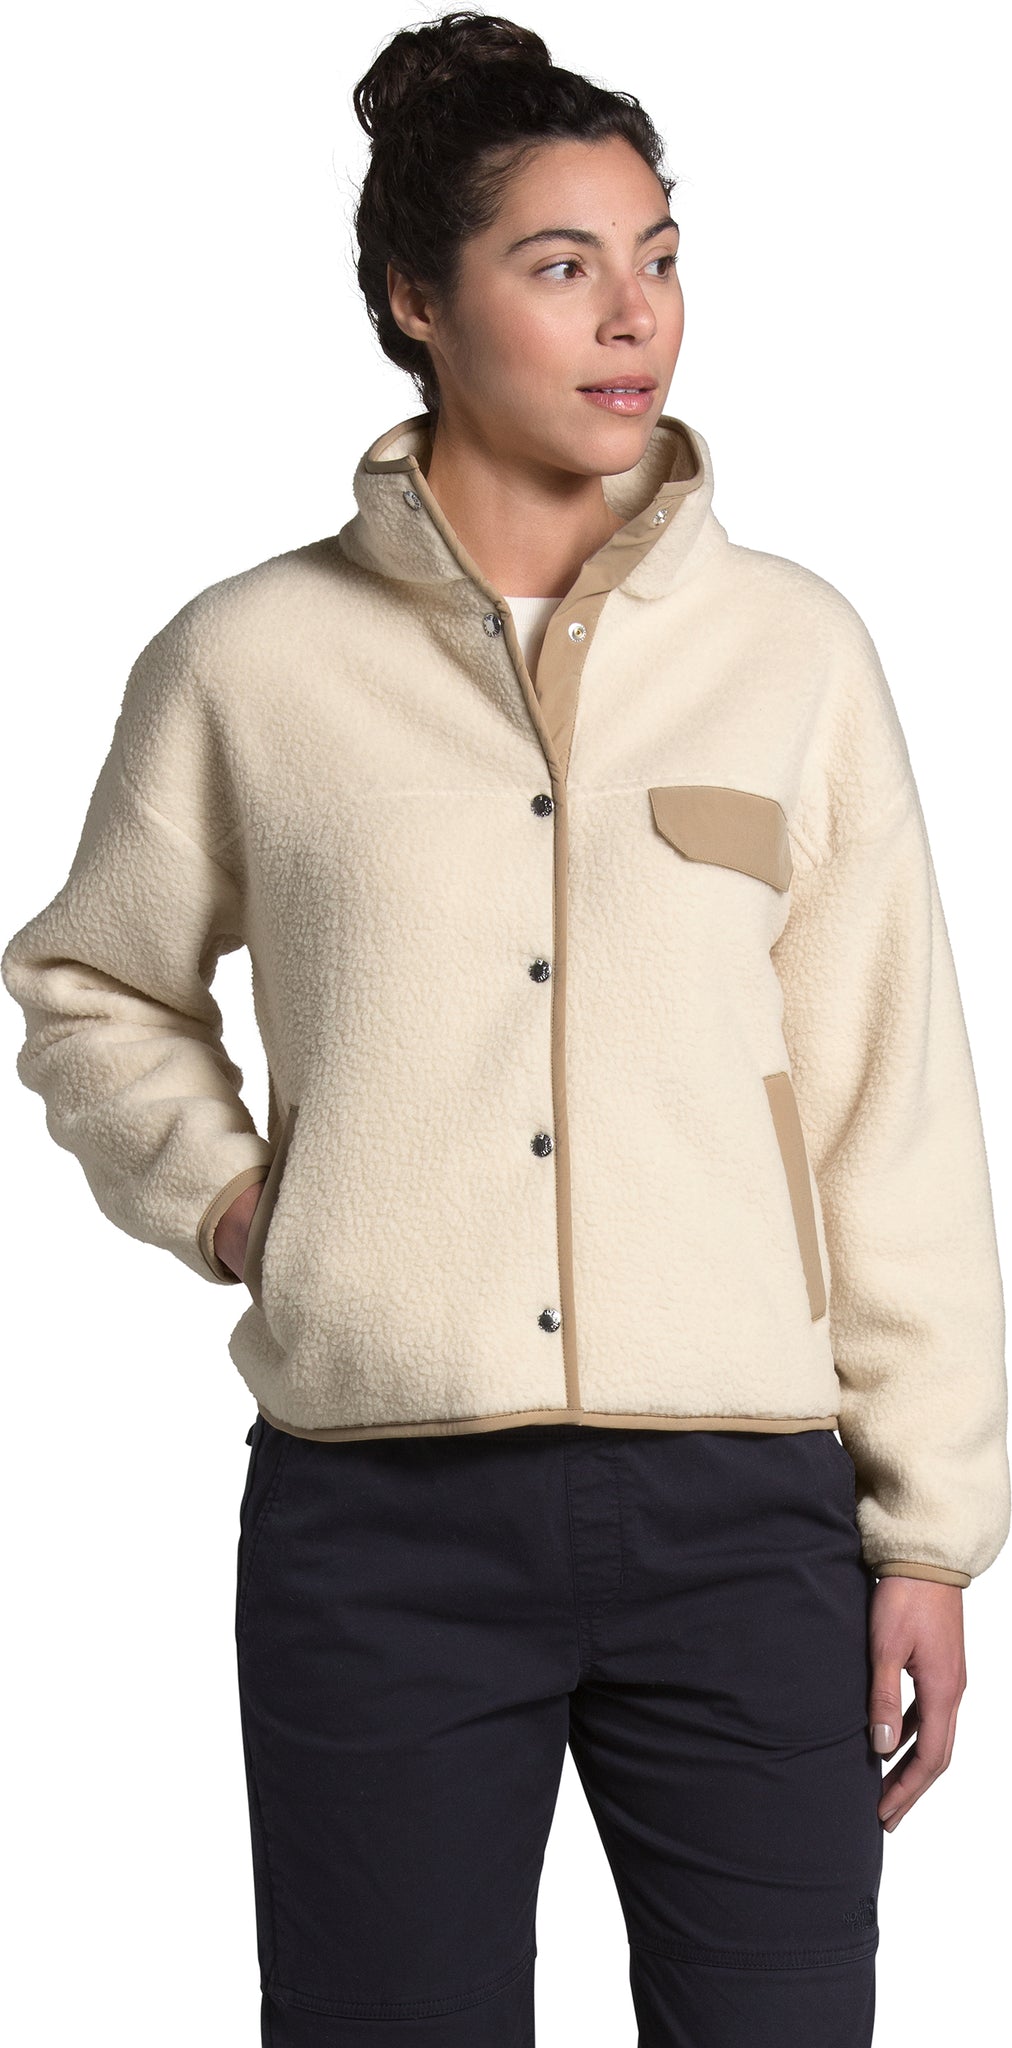 North Face Cragmont Fleece Jacket  Puffer coat with hood, Fleece jacket,  Coats for women